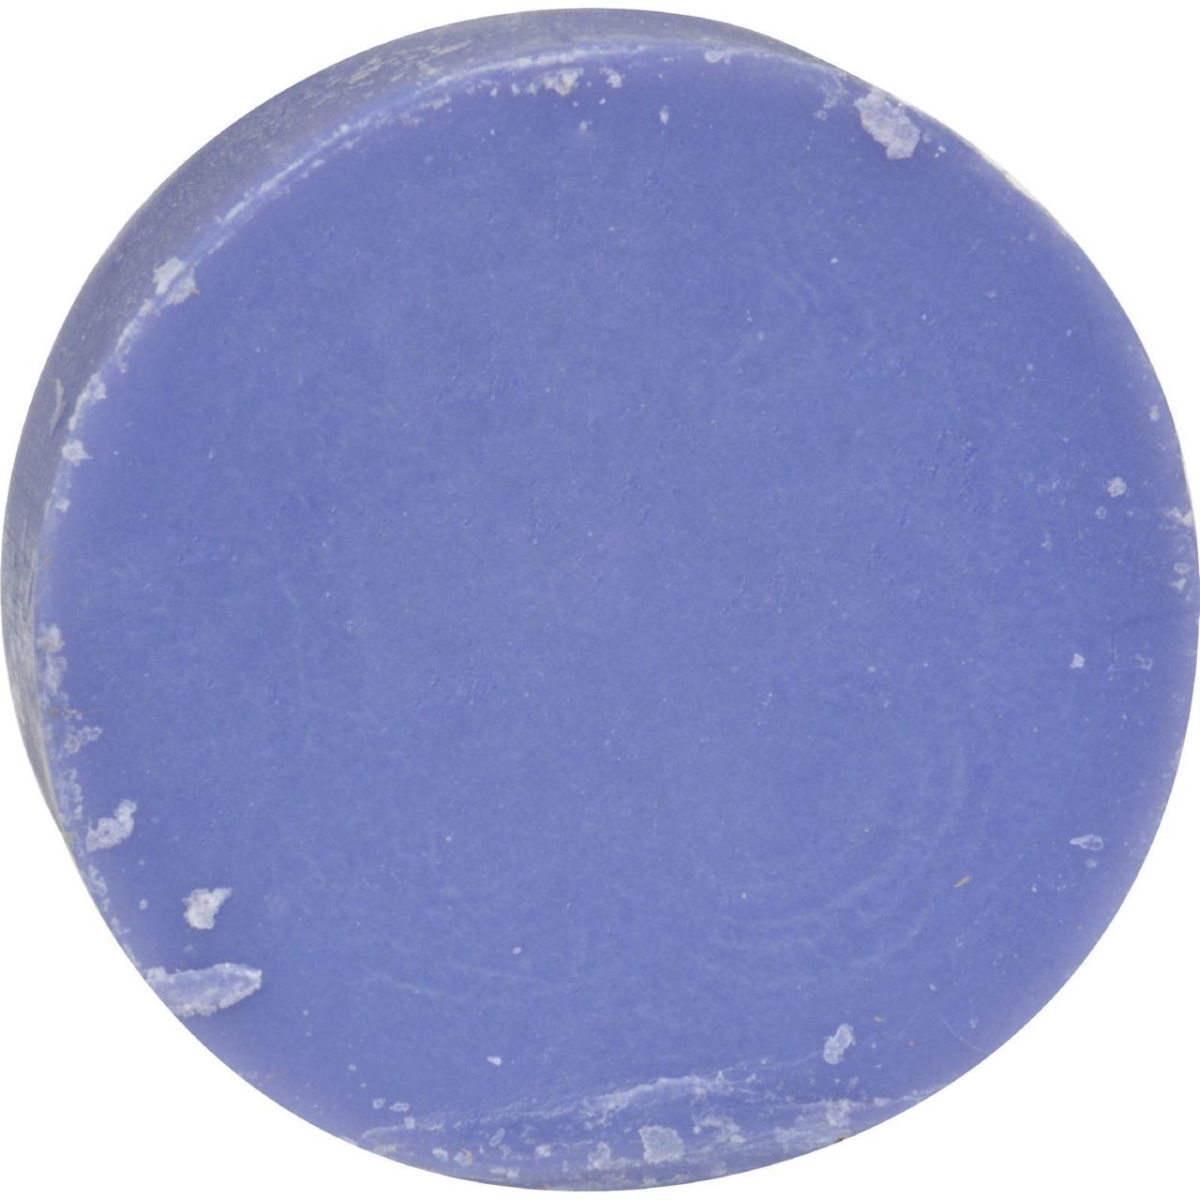 Soapworks Hg0848127 3.5 Oz Glycerine Soap Lavender - Case Of 12